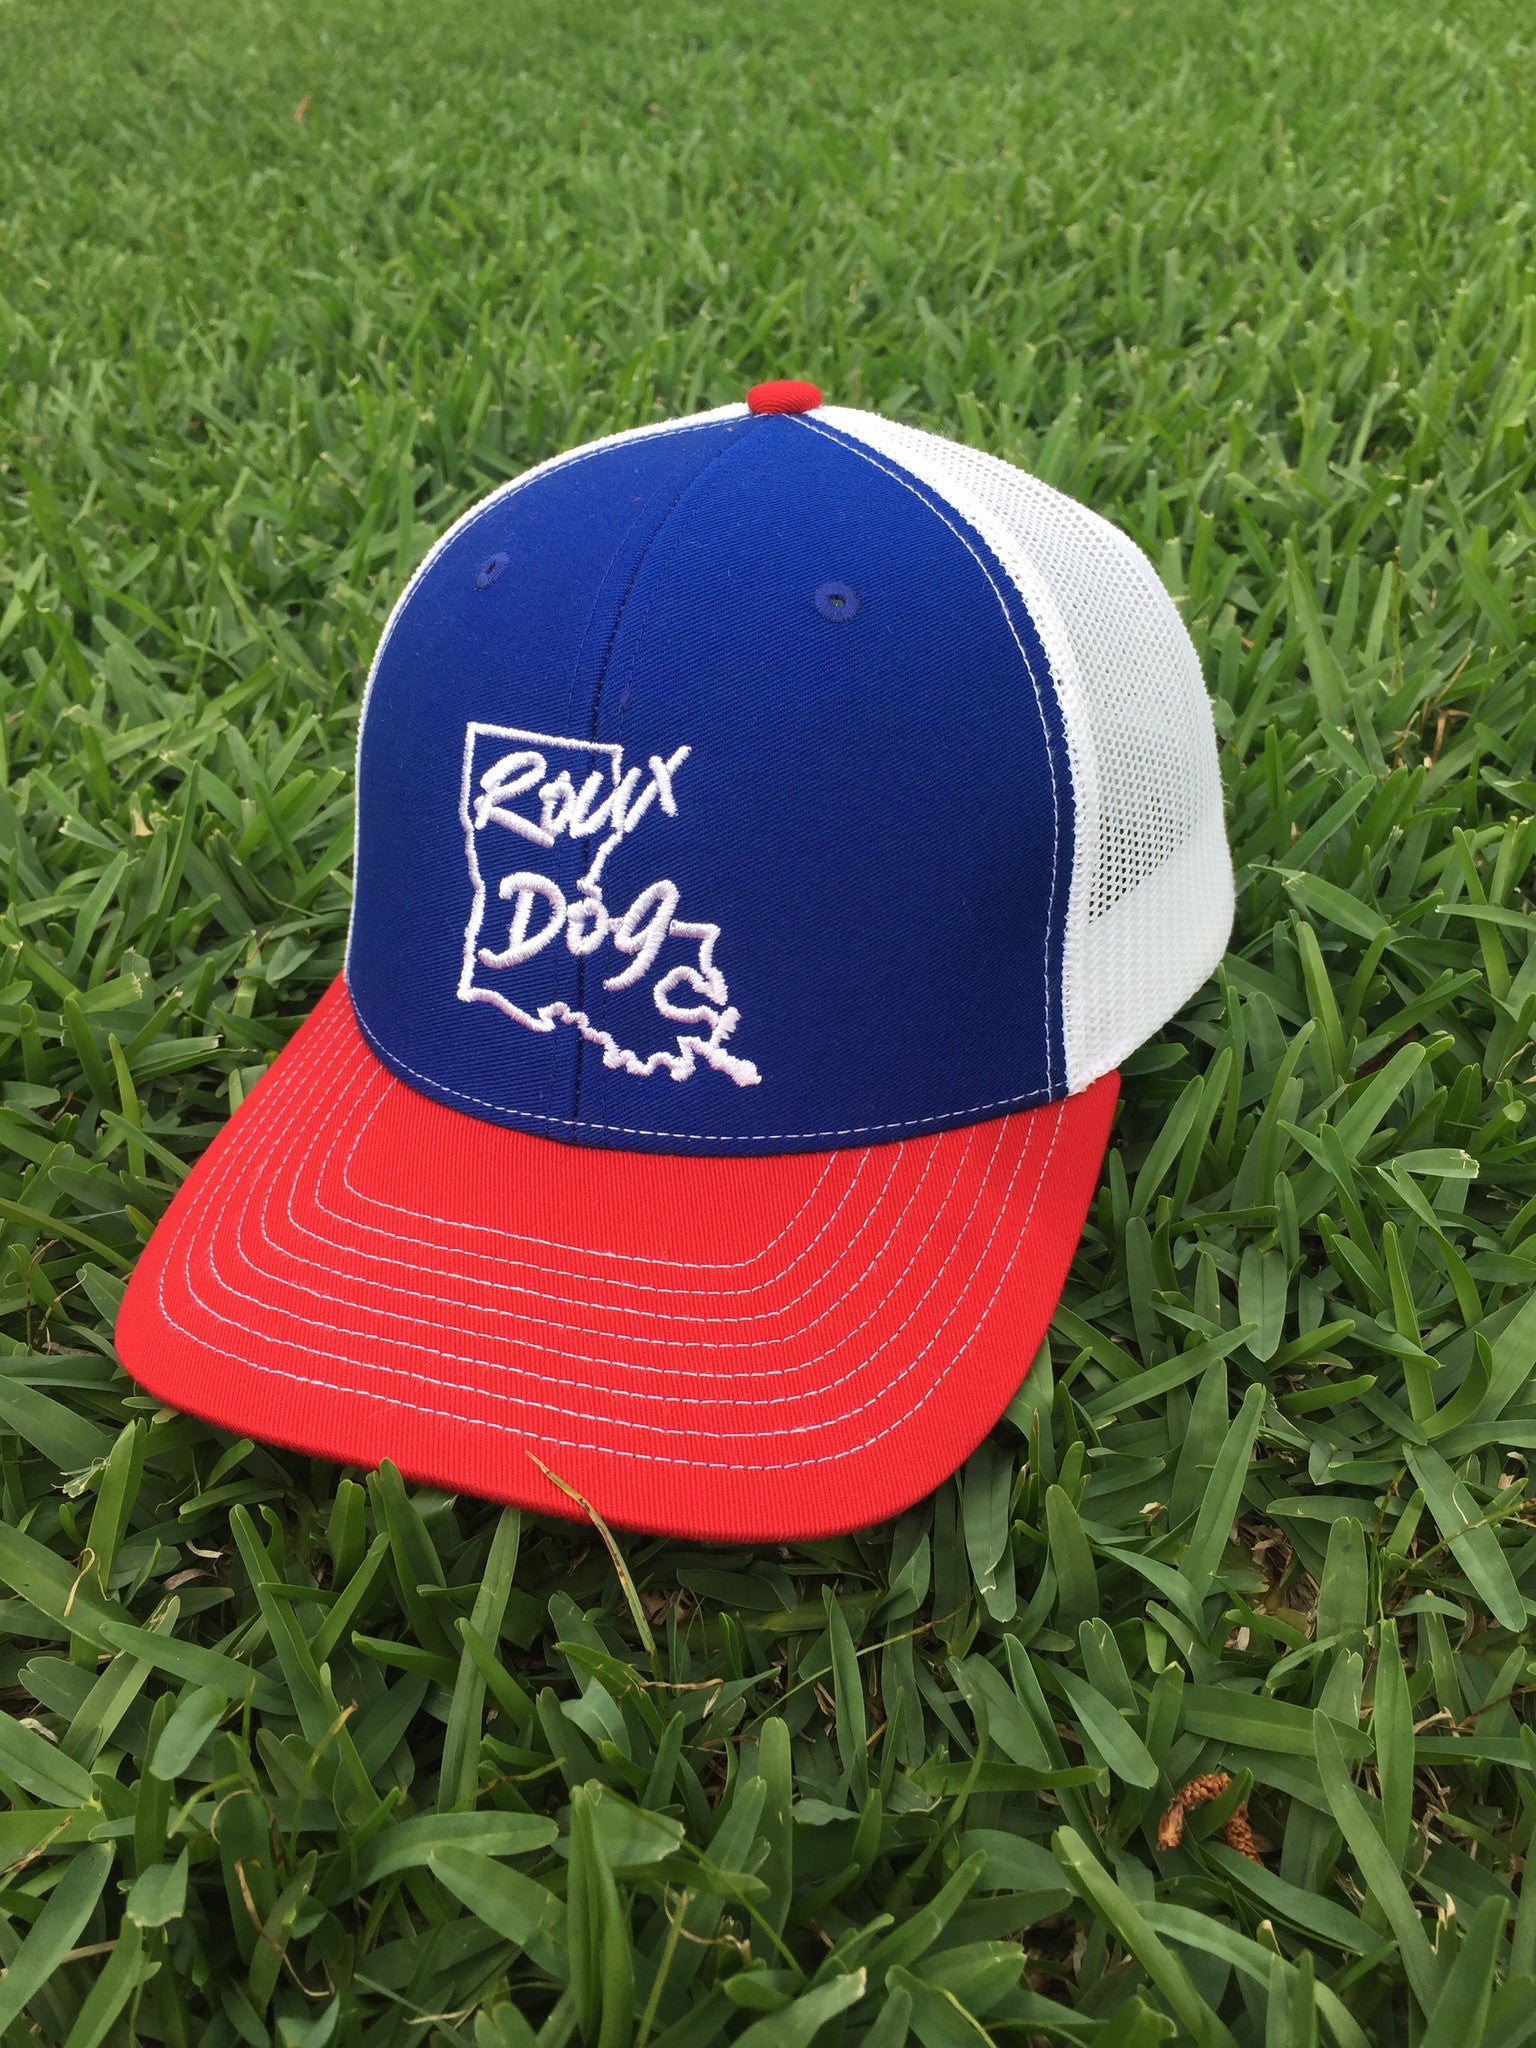 Roux Dog Logo Mesh Back Cap -- Royal/White/Red